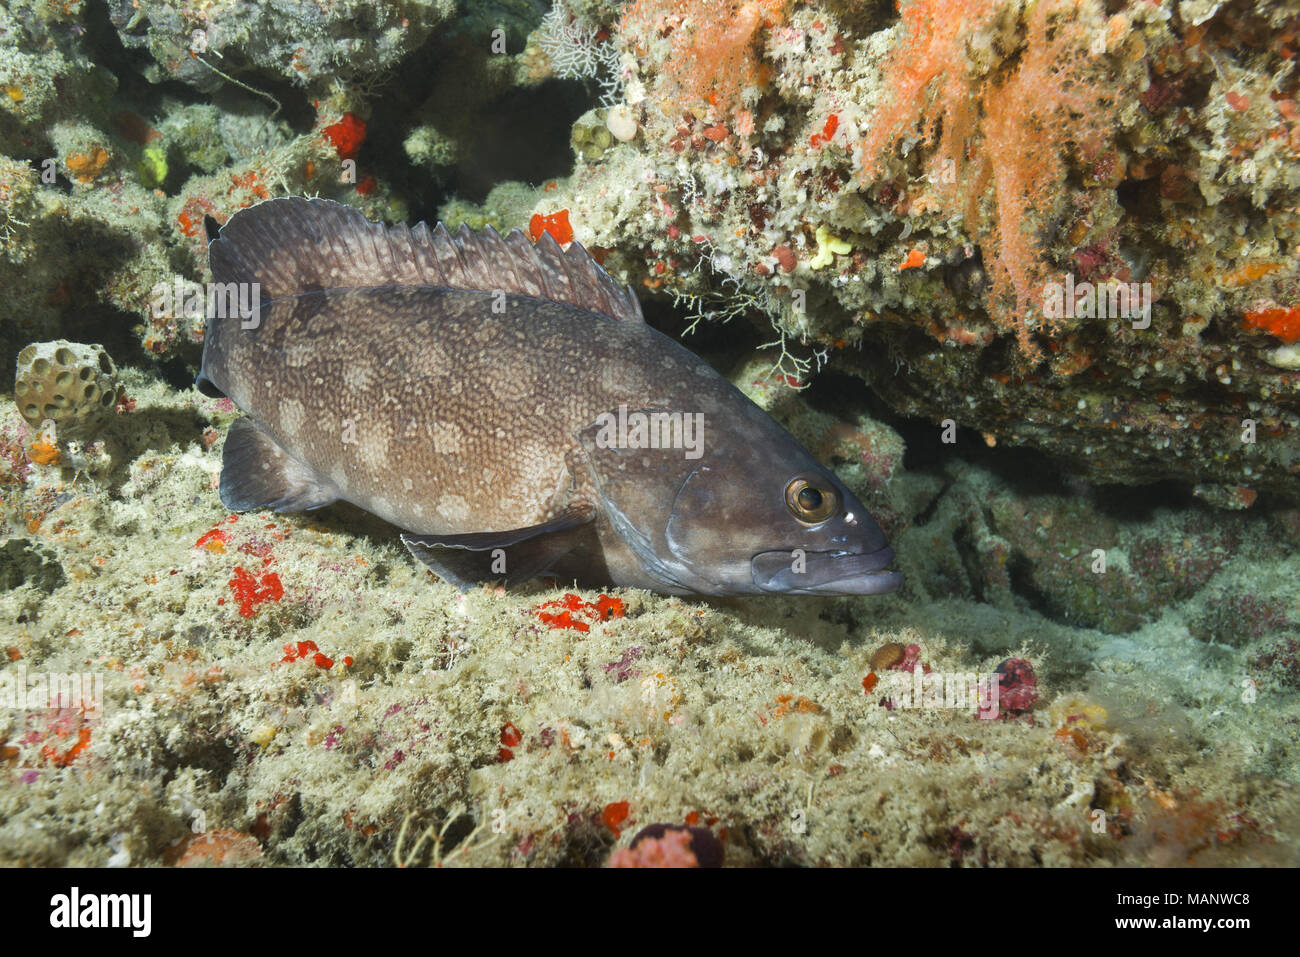 Whitespotted grouper (Epinephelus coeruleopunctatus) near coral reef Stock Photo